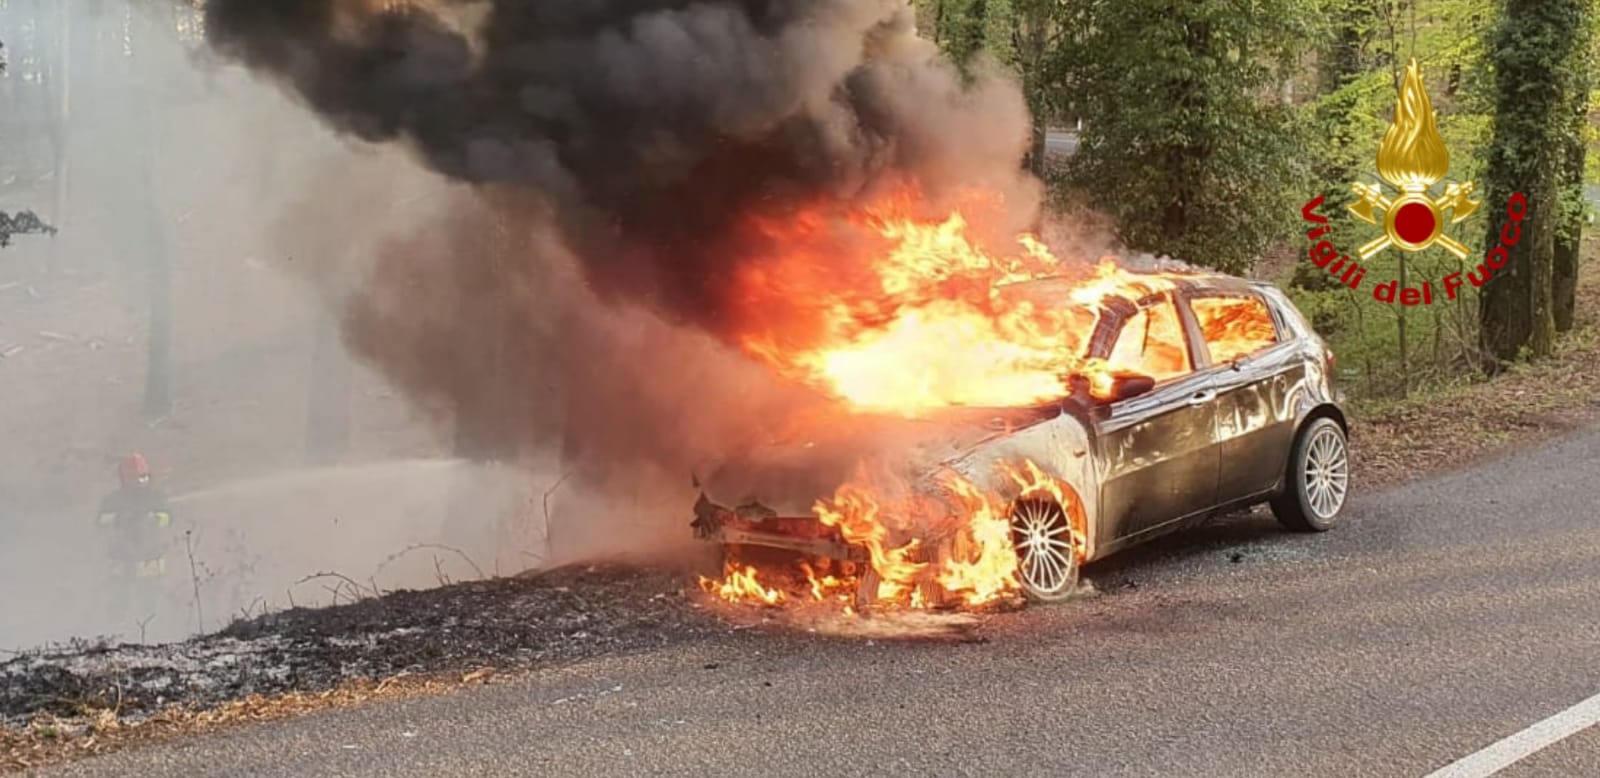 Auto in fiamme, il fuoco brucia la vegetazione circostante